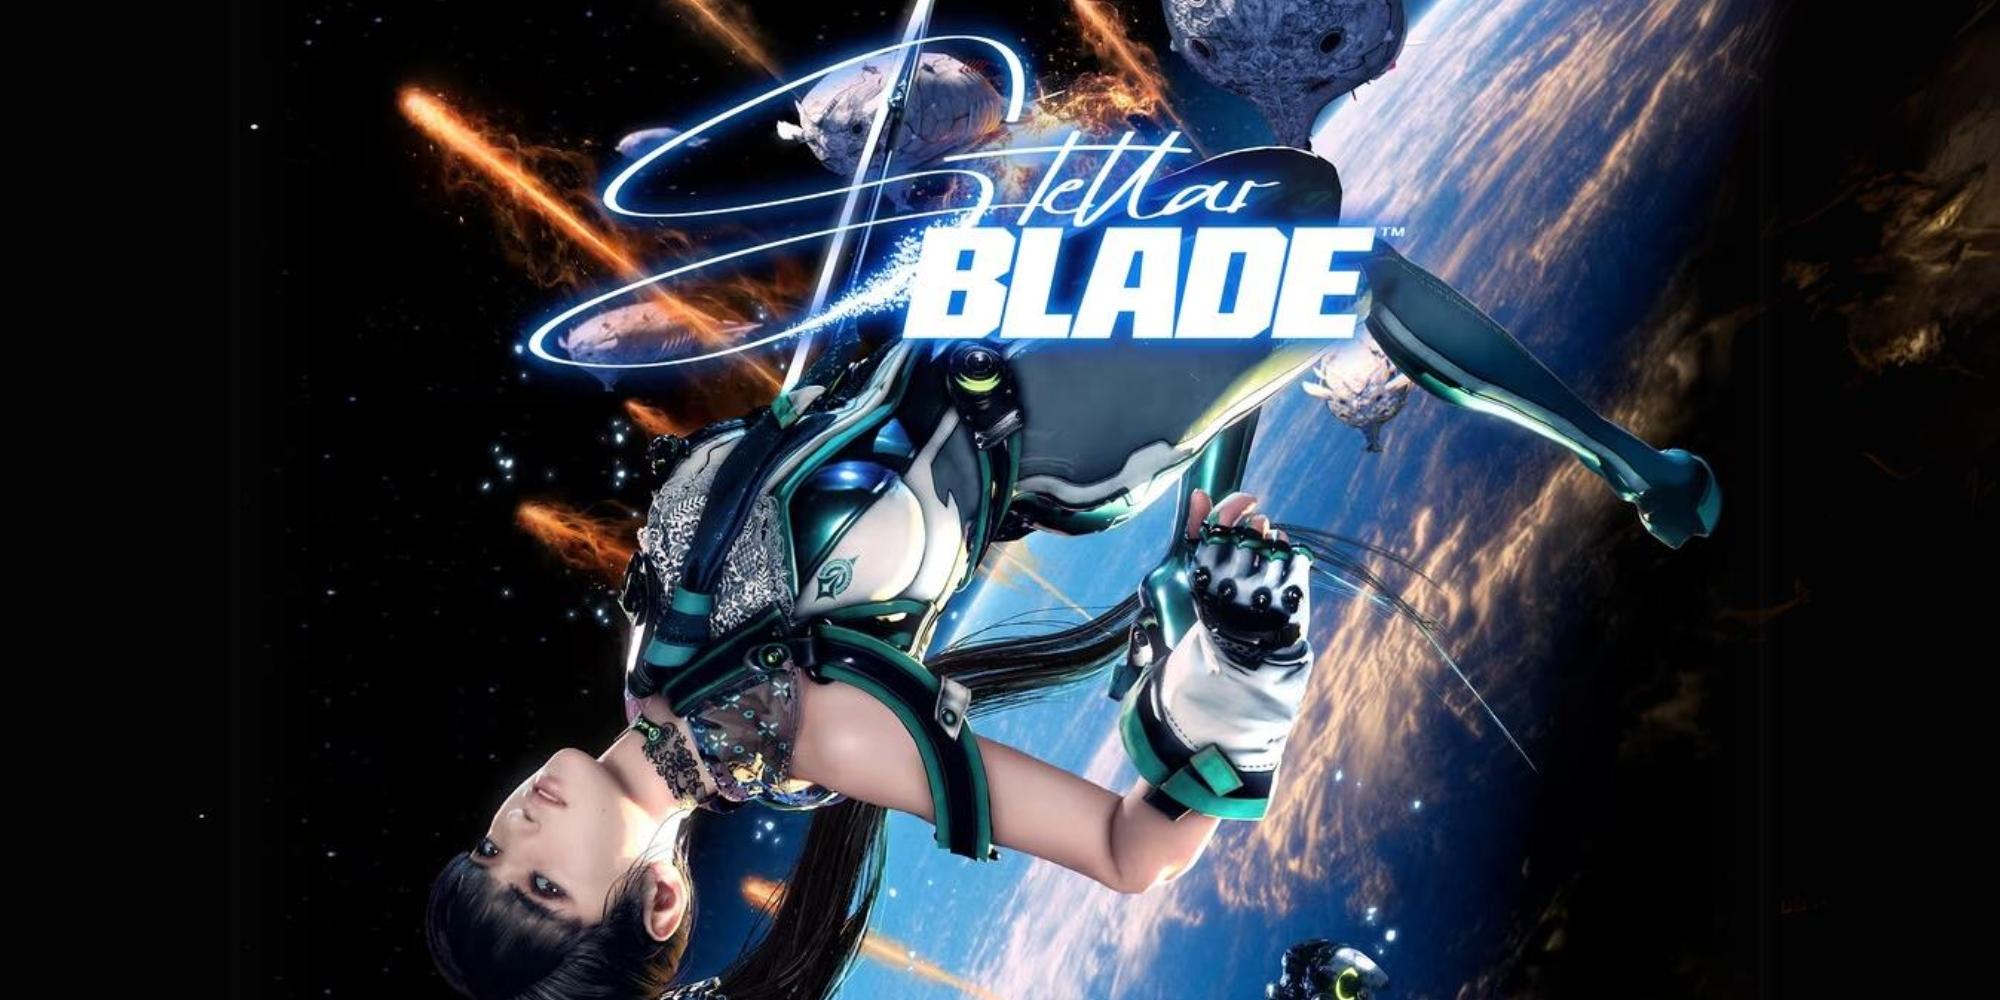 Cover Image for Demo de Stellar Blade chega em 29 de março